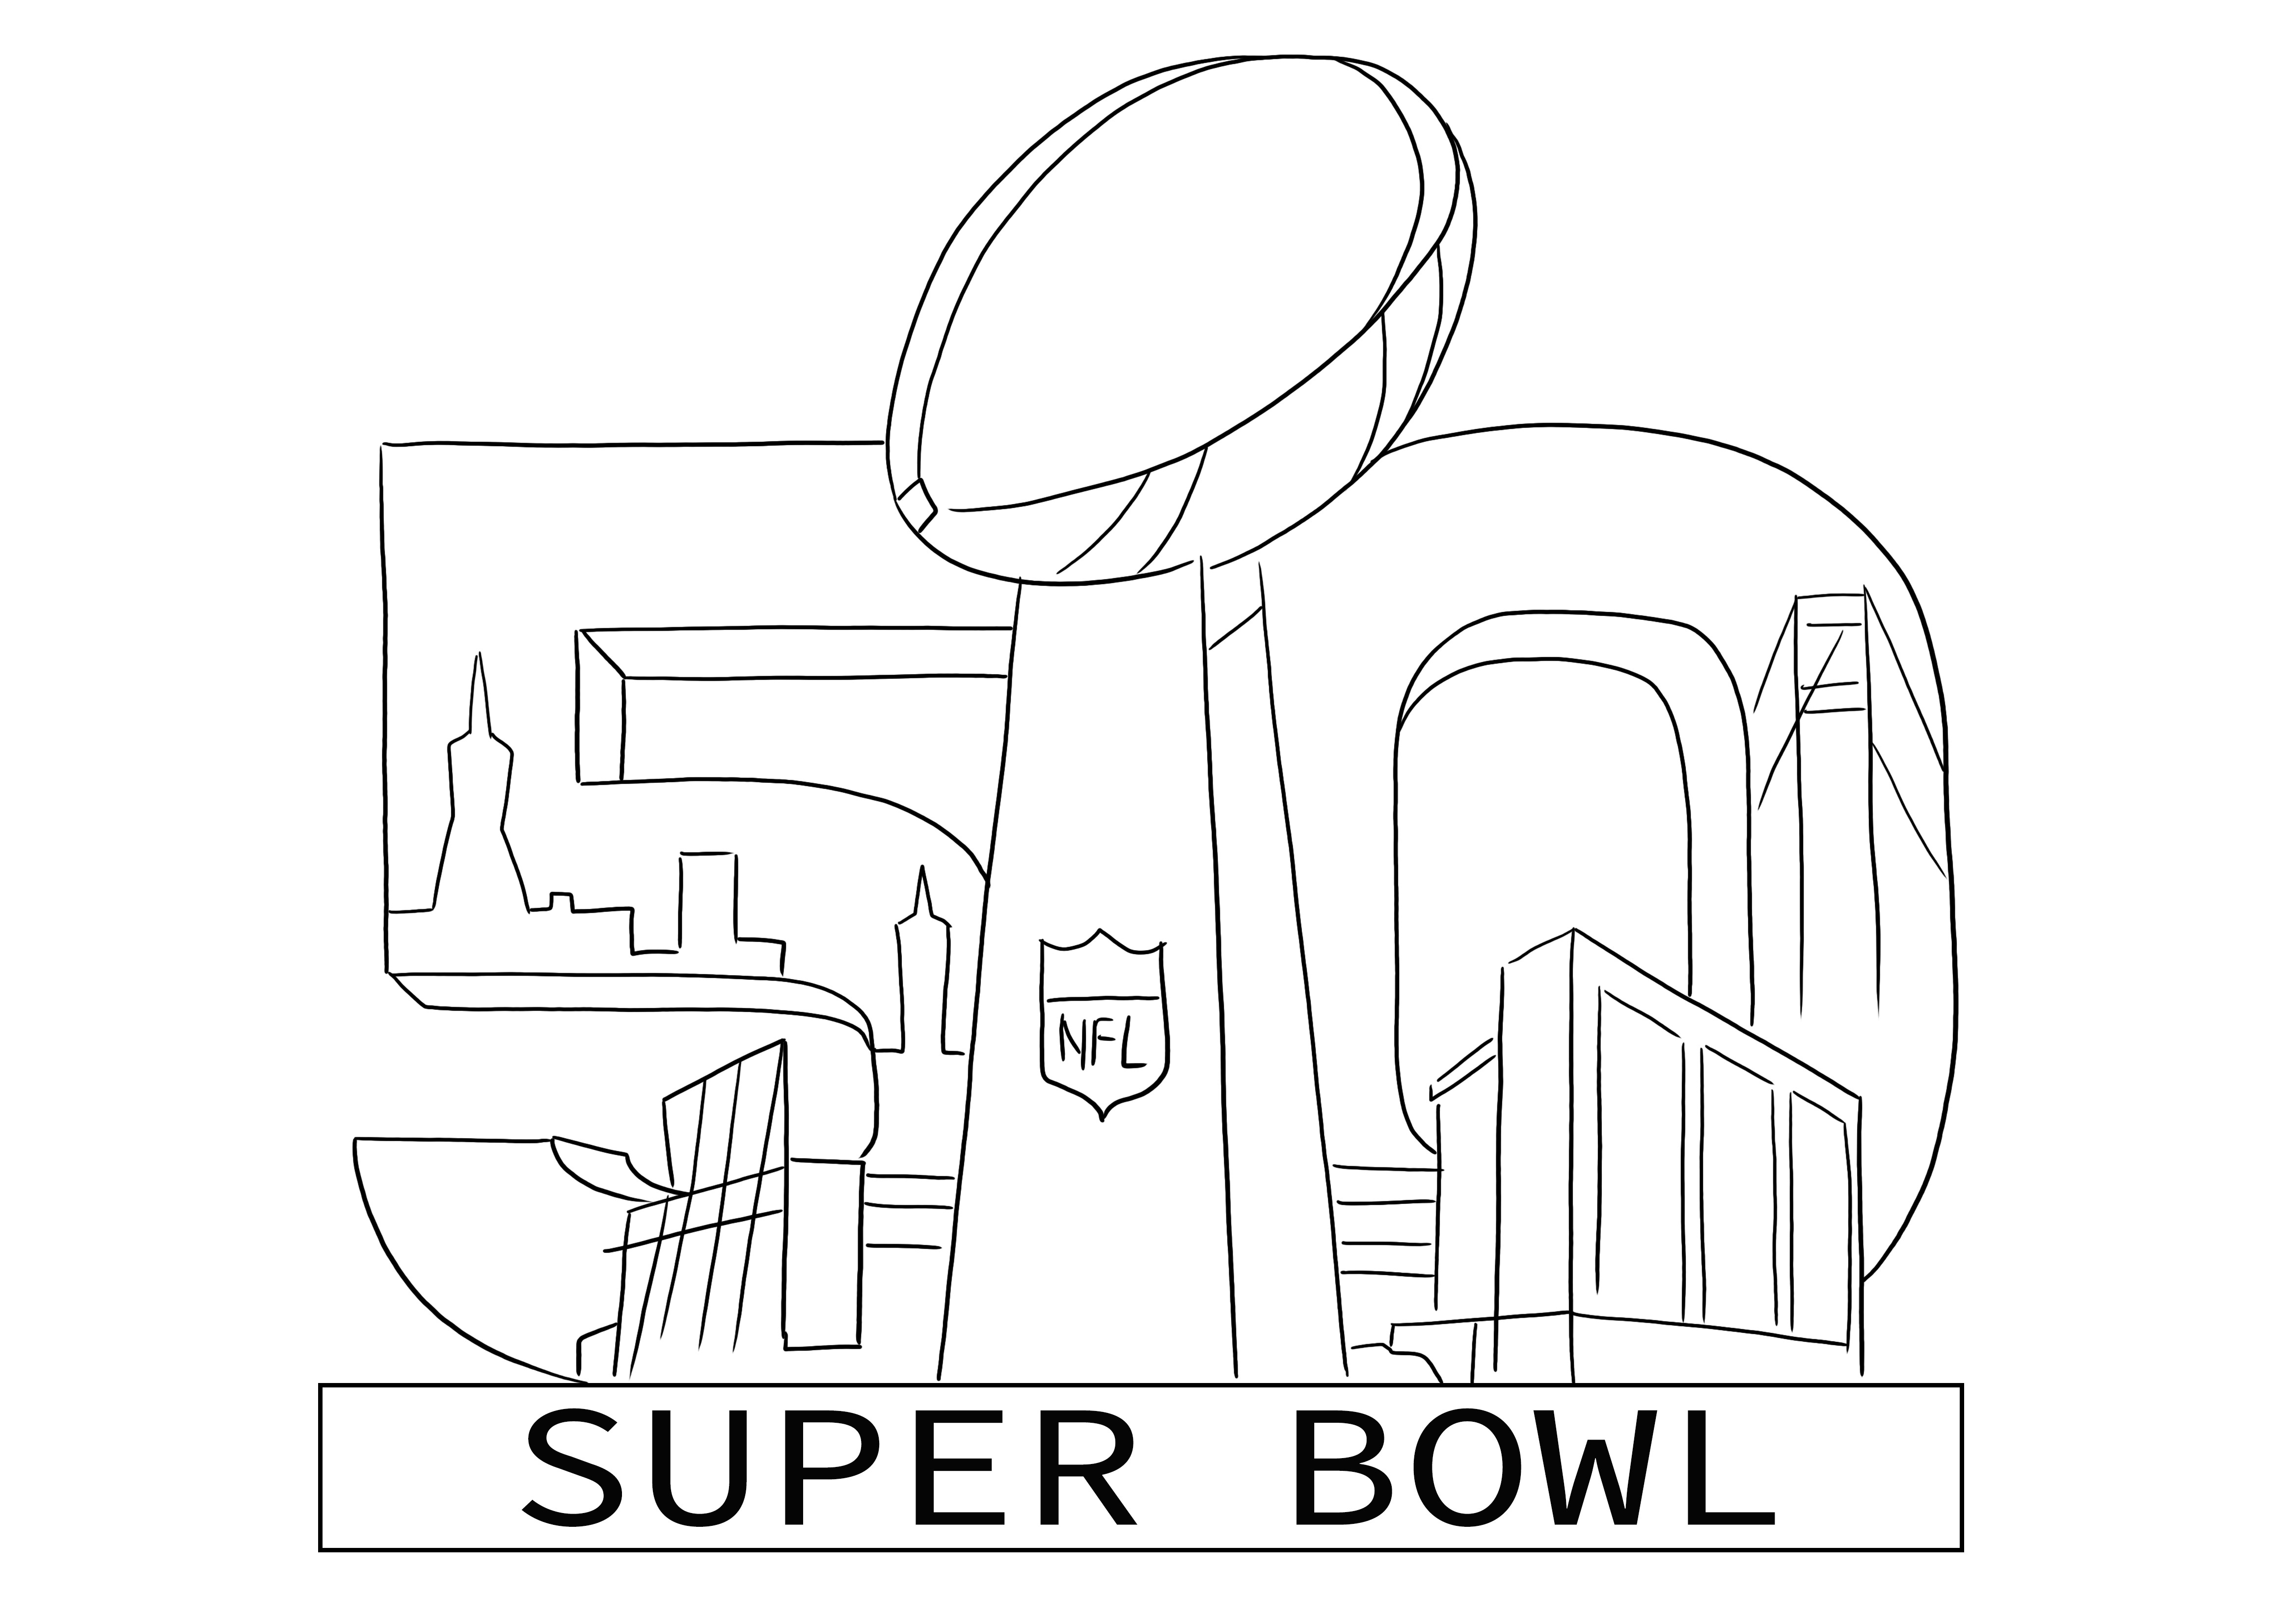 Logo mewarnai Super Bowl 2016 gratis untuk dicetak atau diunduh untuk anak-anak